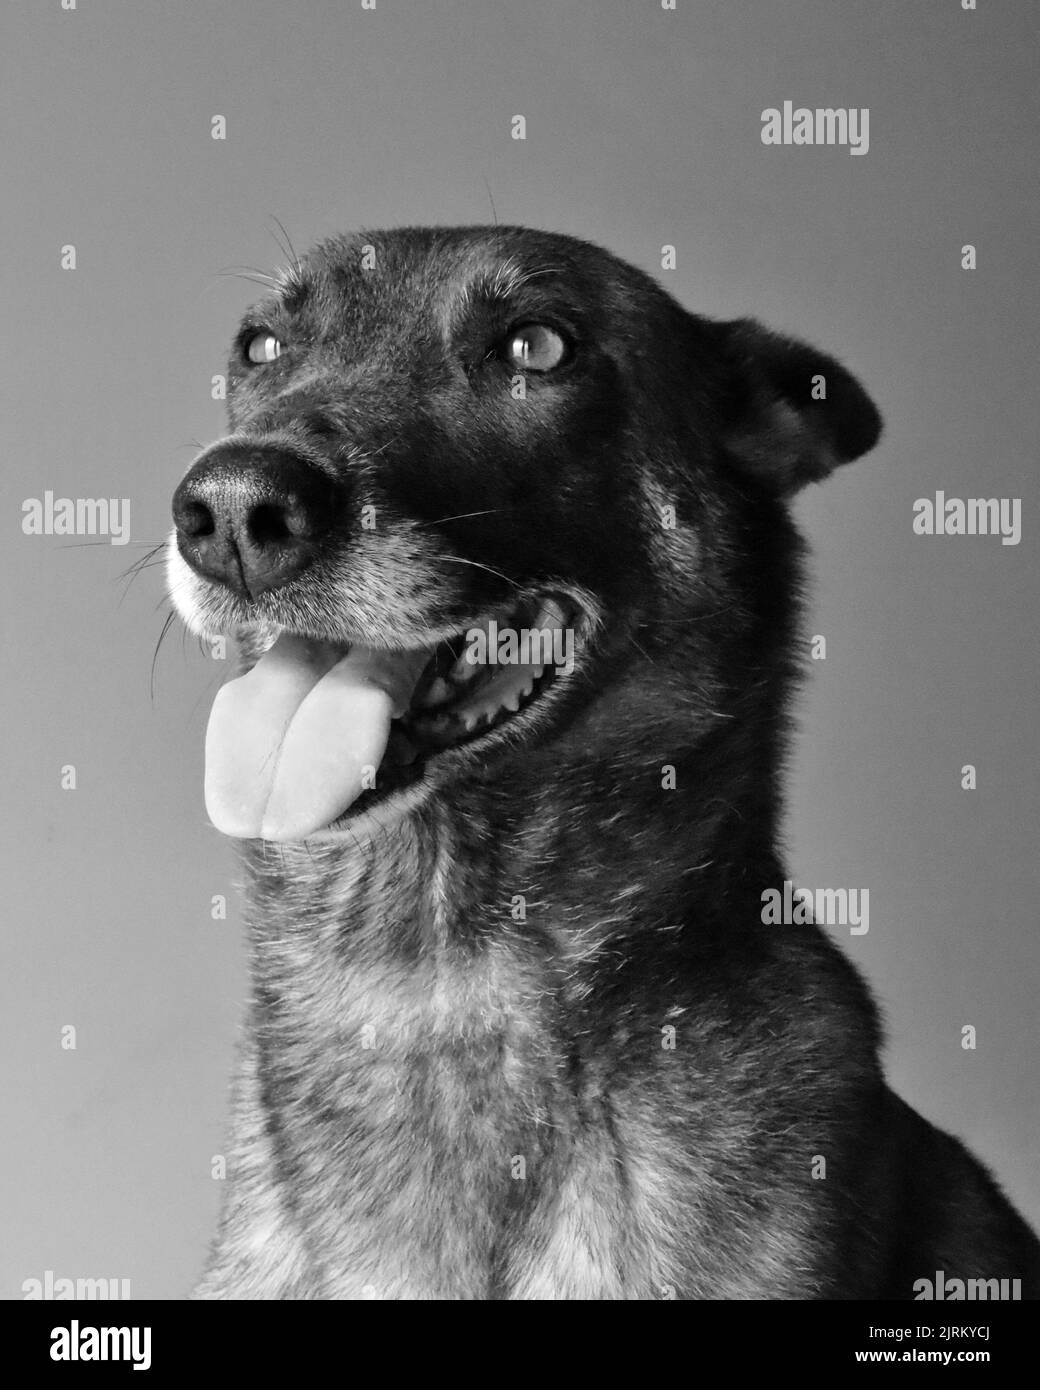 Un ritratto in scala di grigi di un pastore olandese con la lingua fuori Foto Stock